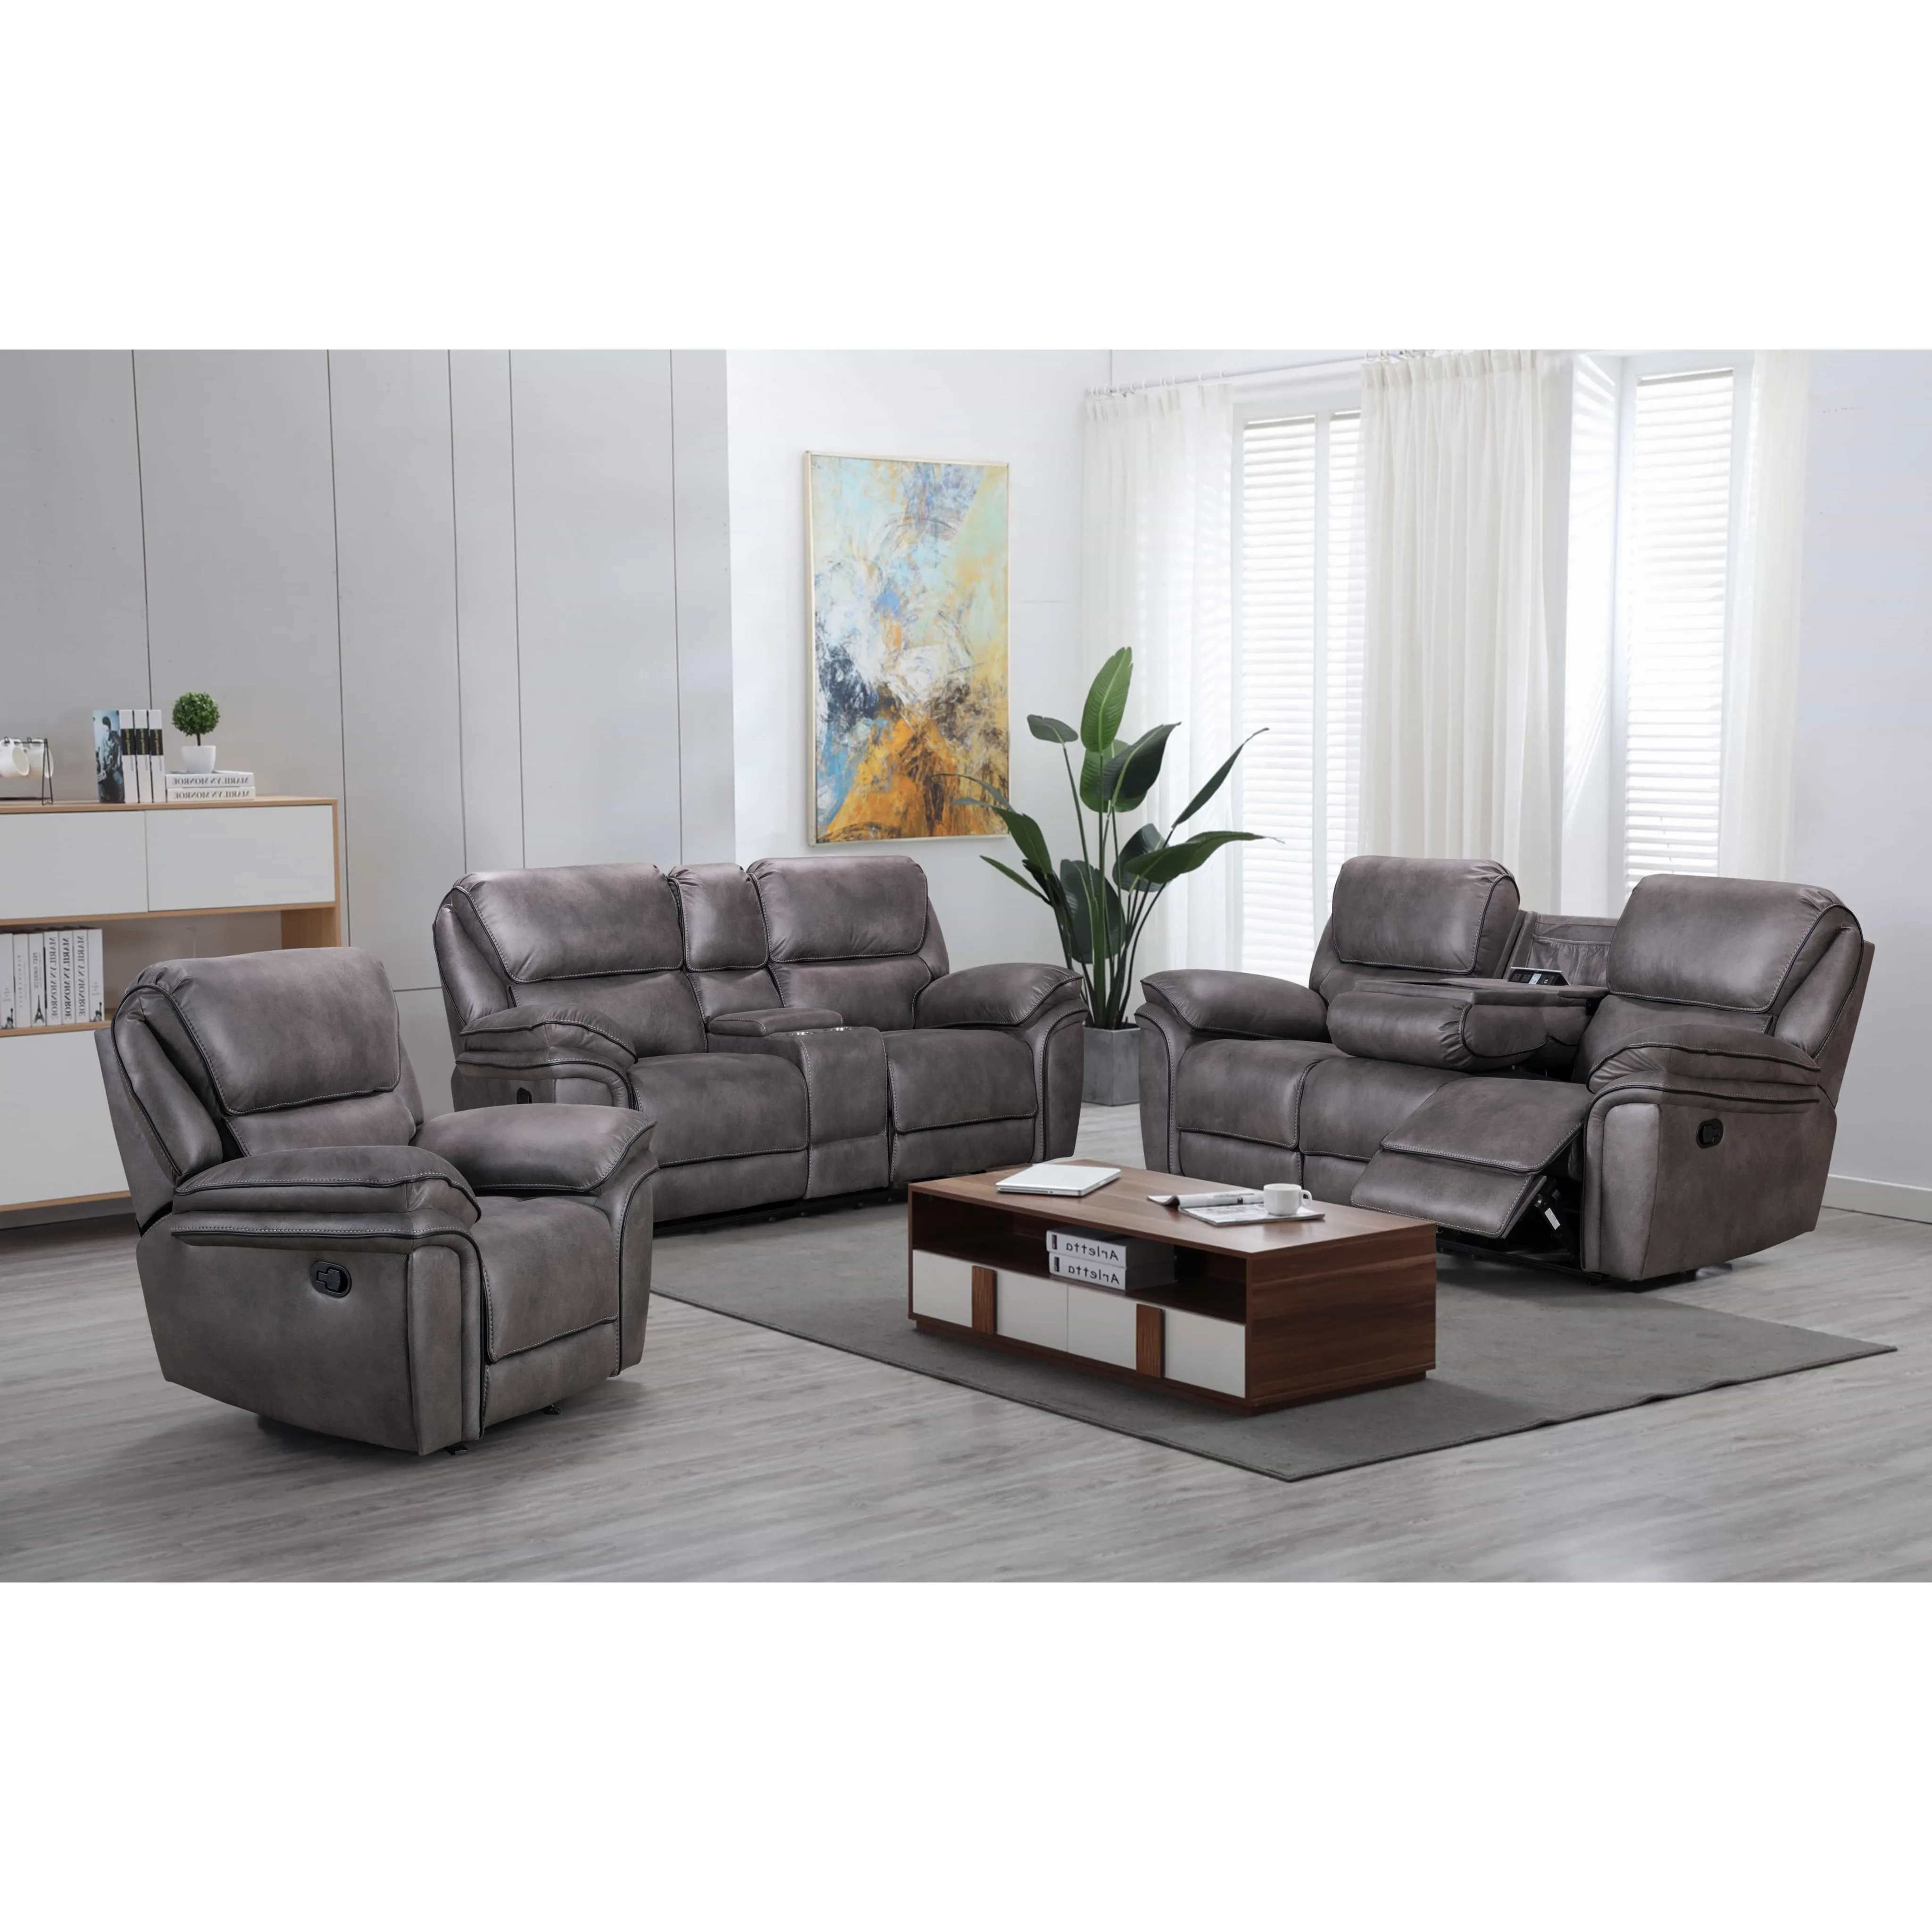 Moderno sofá reclinable Set Manual de 7 plazas OEM ODM reclinables movimiento sofá reclinable